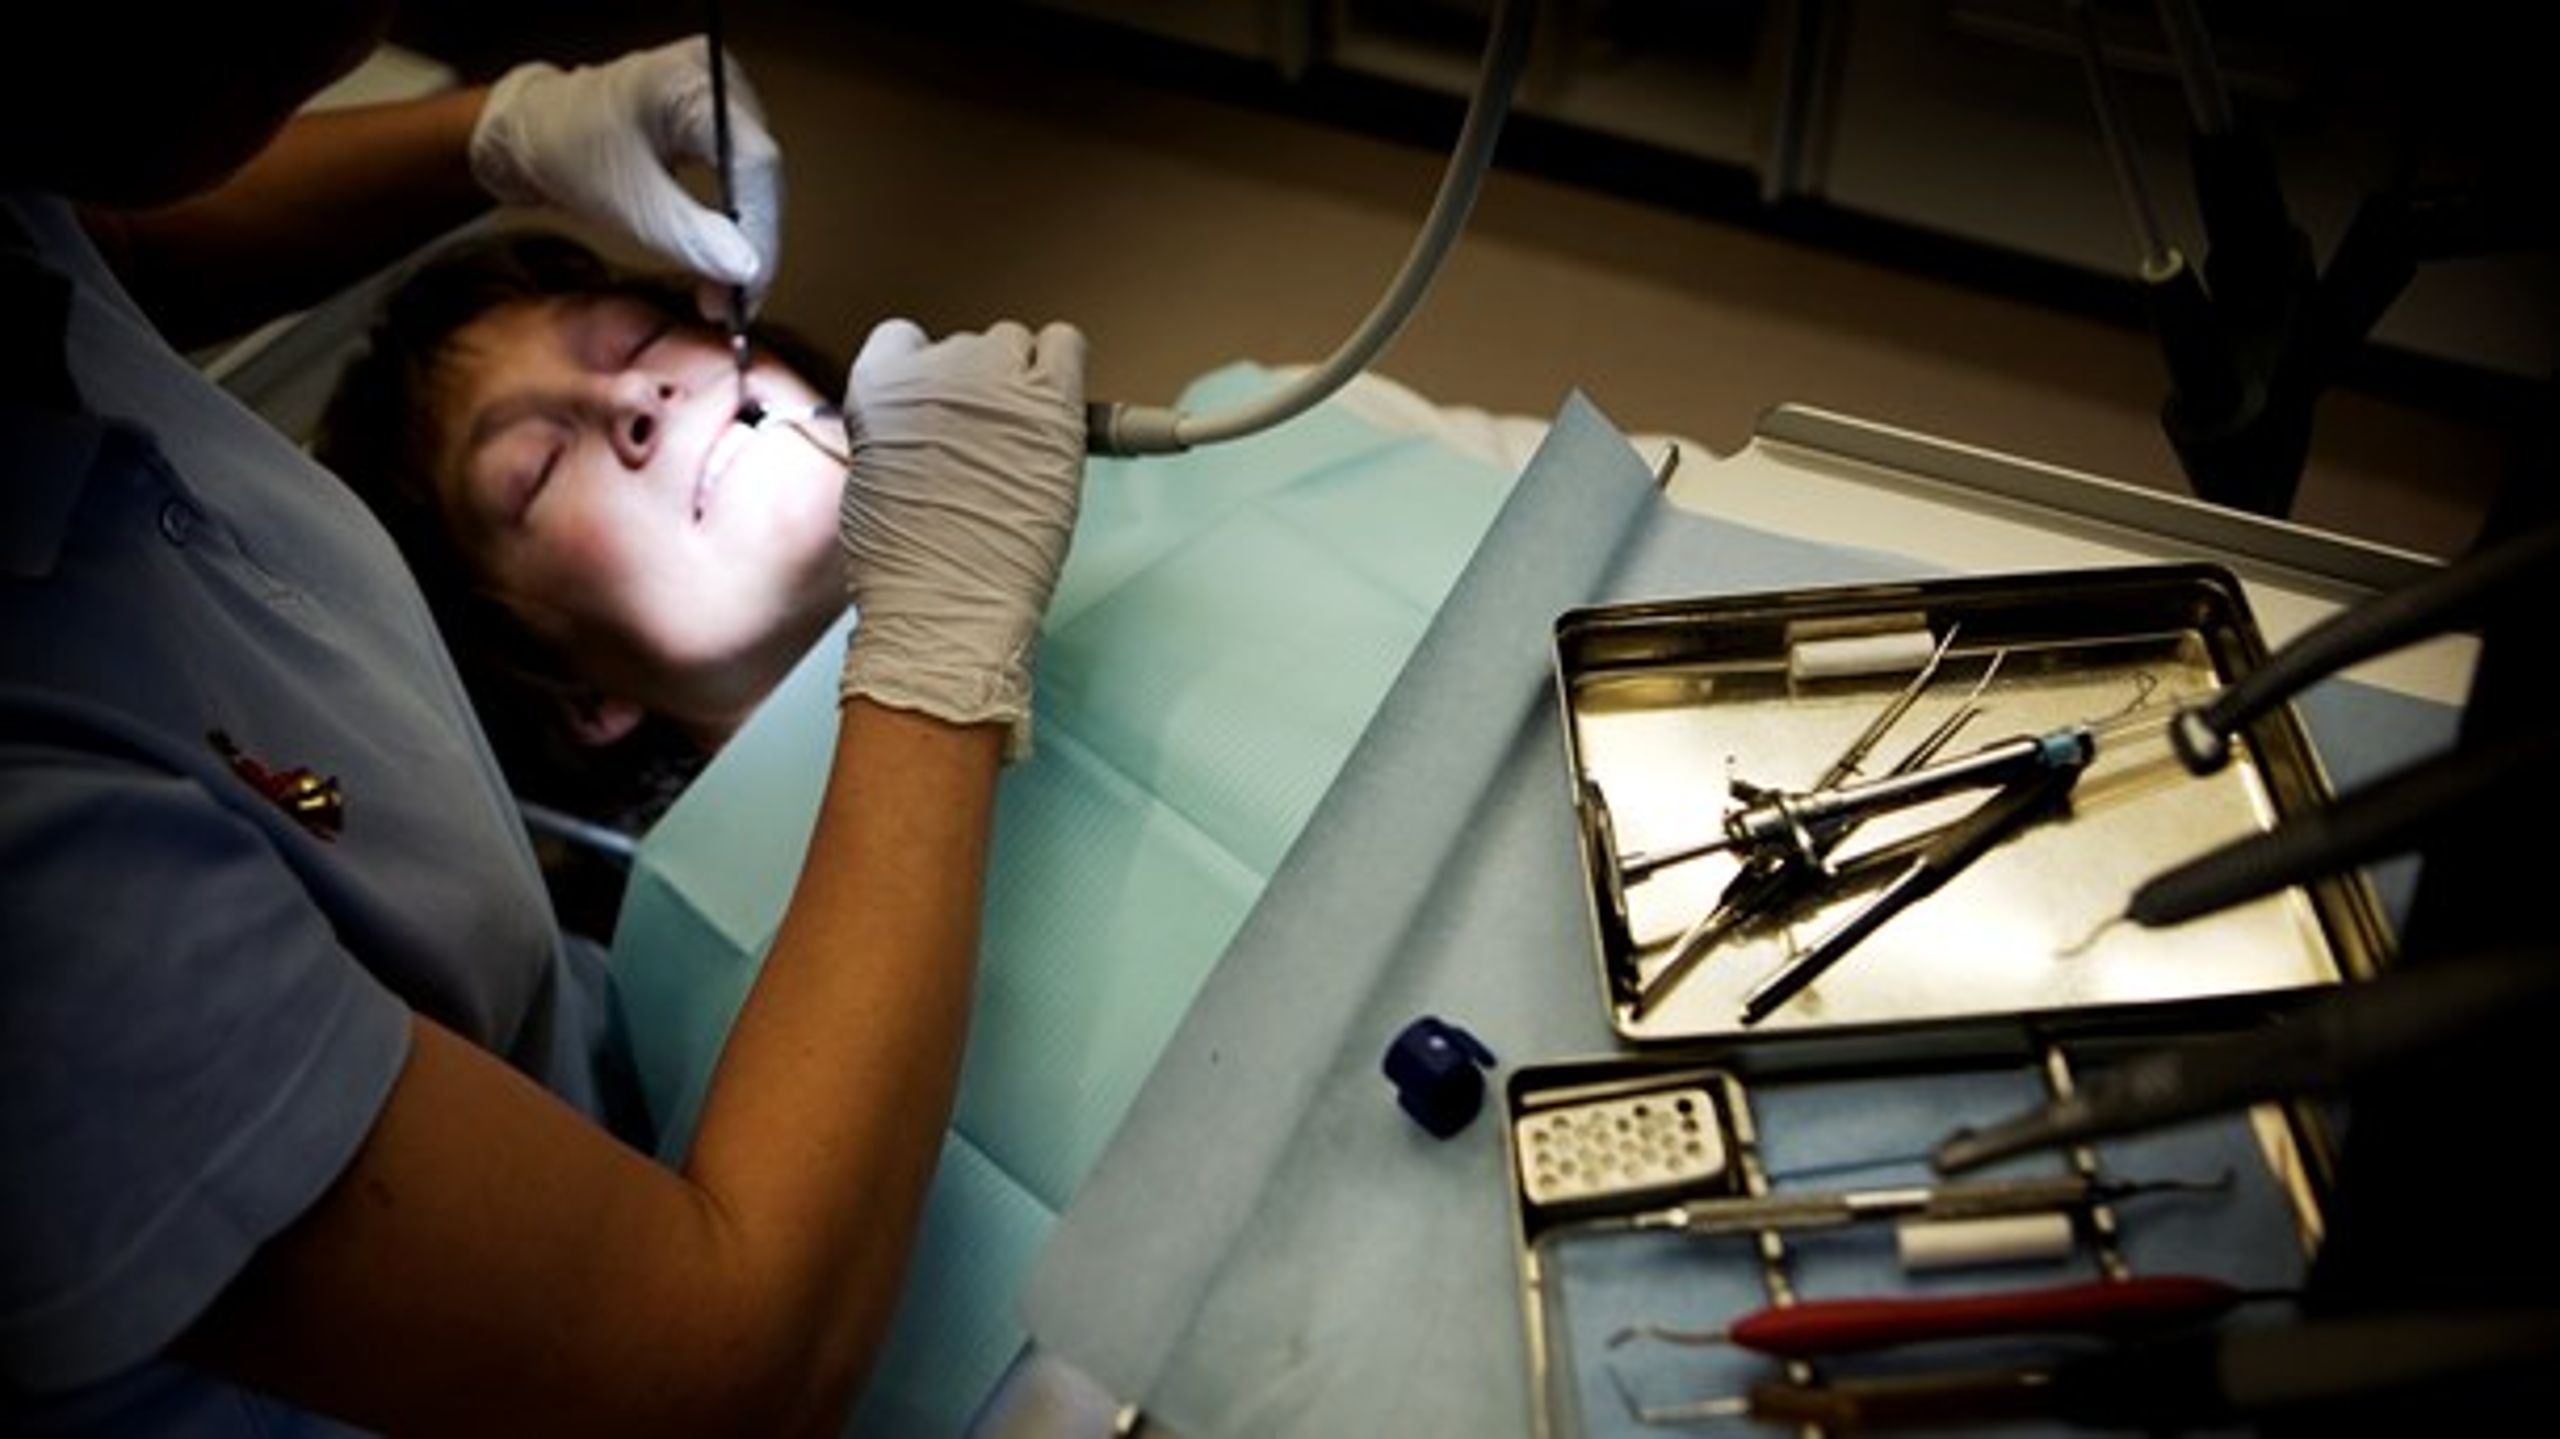 Tandlæger yder behovsorienteret tandpleje baseret på en faglig diagnose og borgernes behov for tandpleje bliver ikke mindre af, at Corydon tager 300 millioner kroner, sagde PTO i 2013.